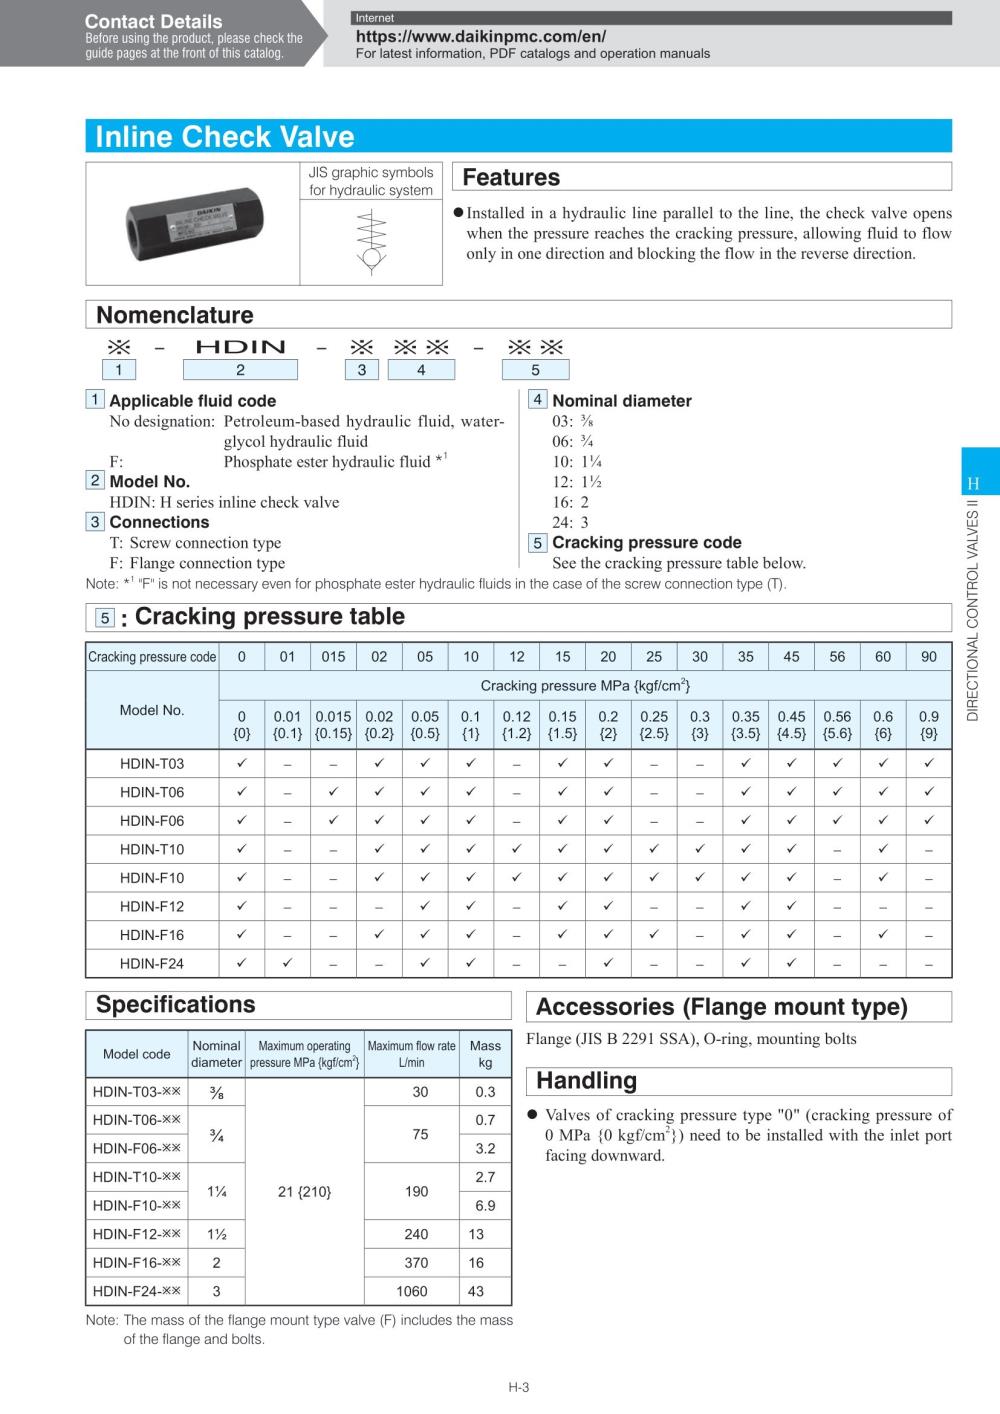 DAIKIN Inline Check Valve HDIN-F24 Series